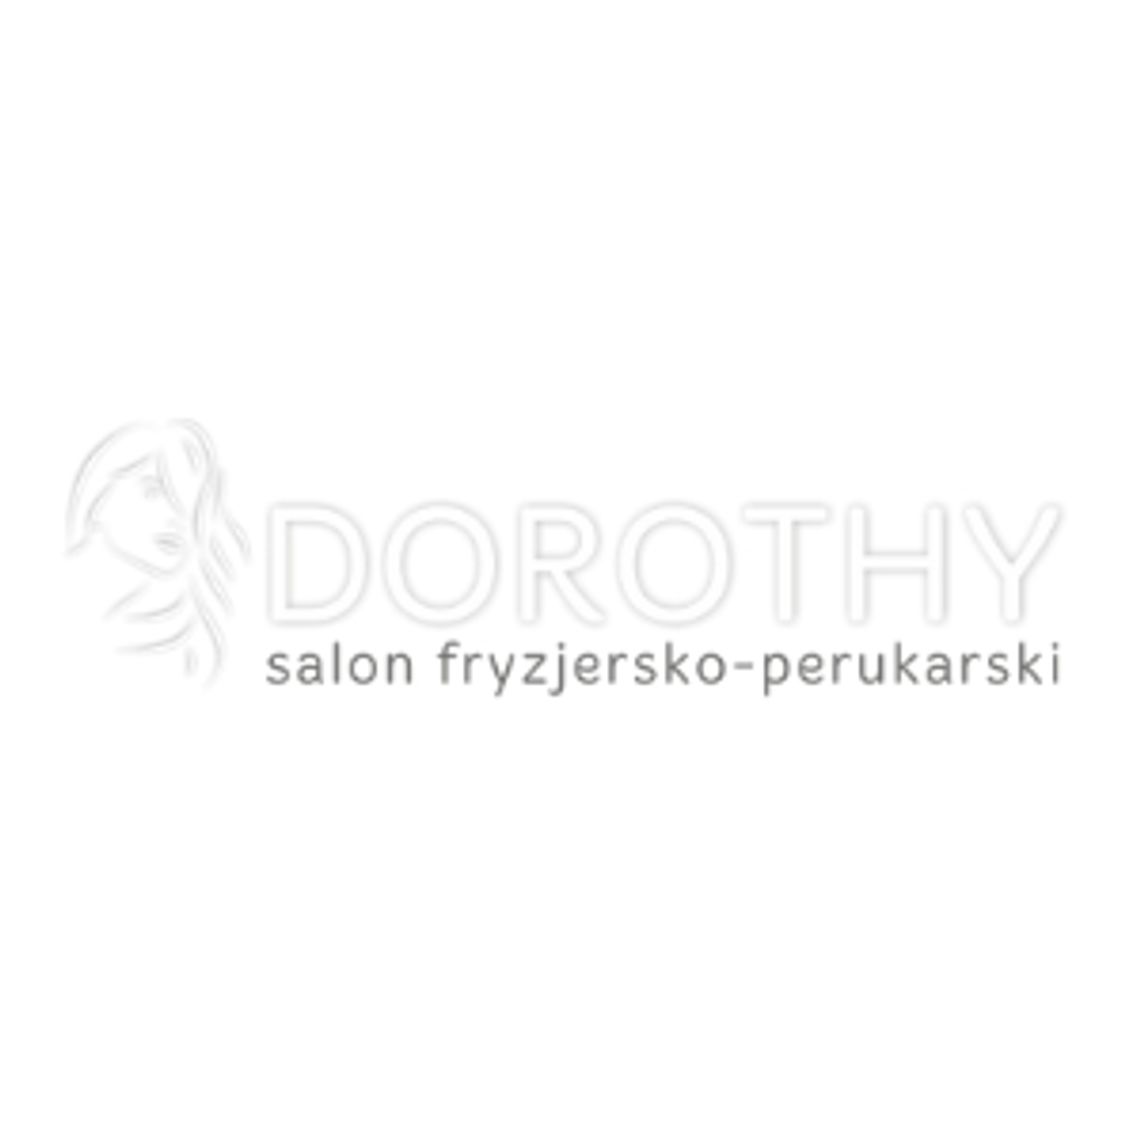 Usługi fryzjerskie - Salon Dorothy